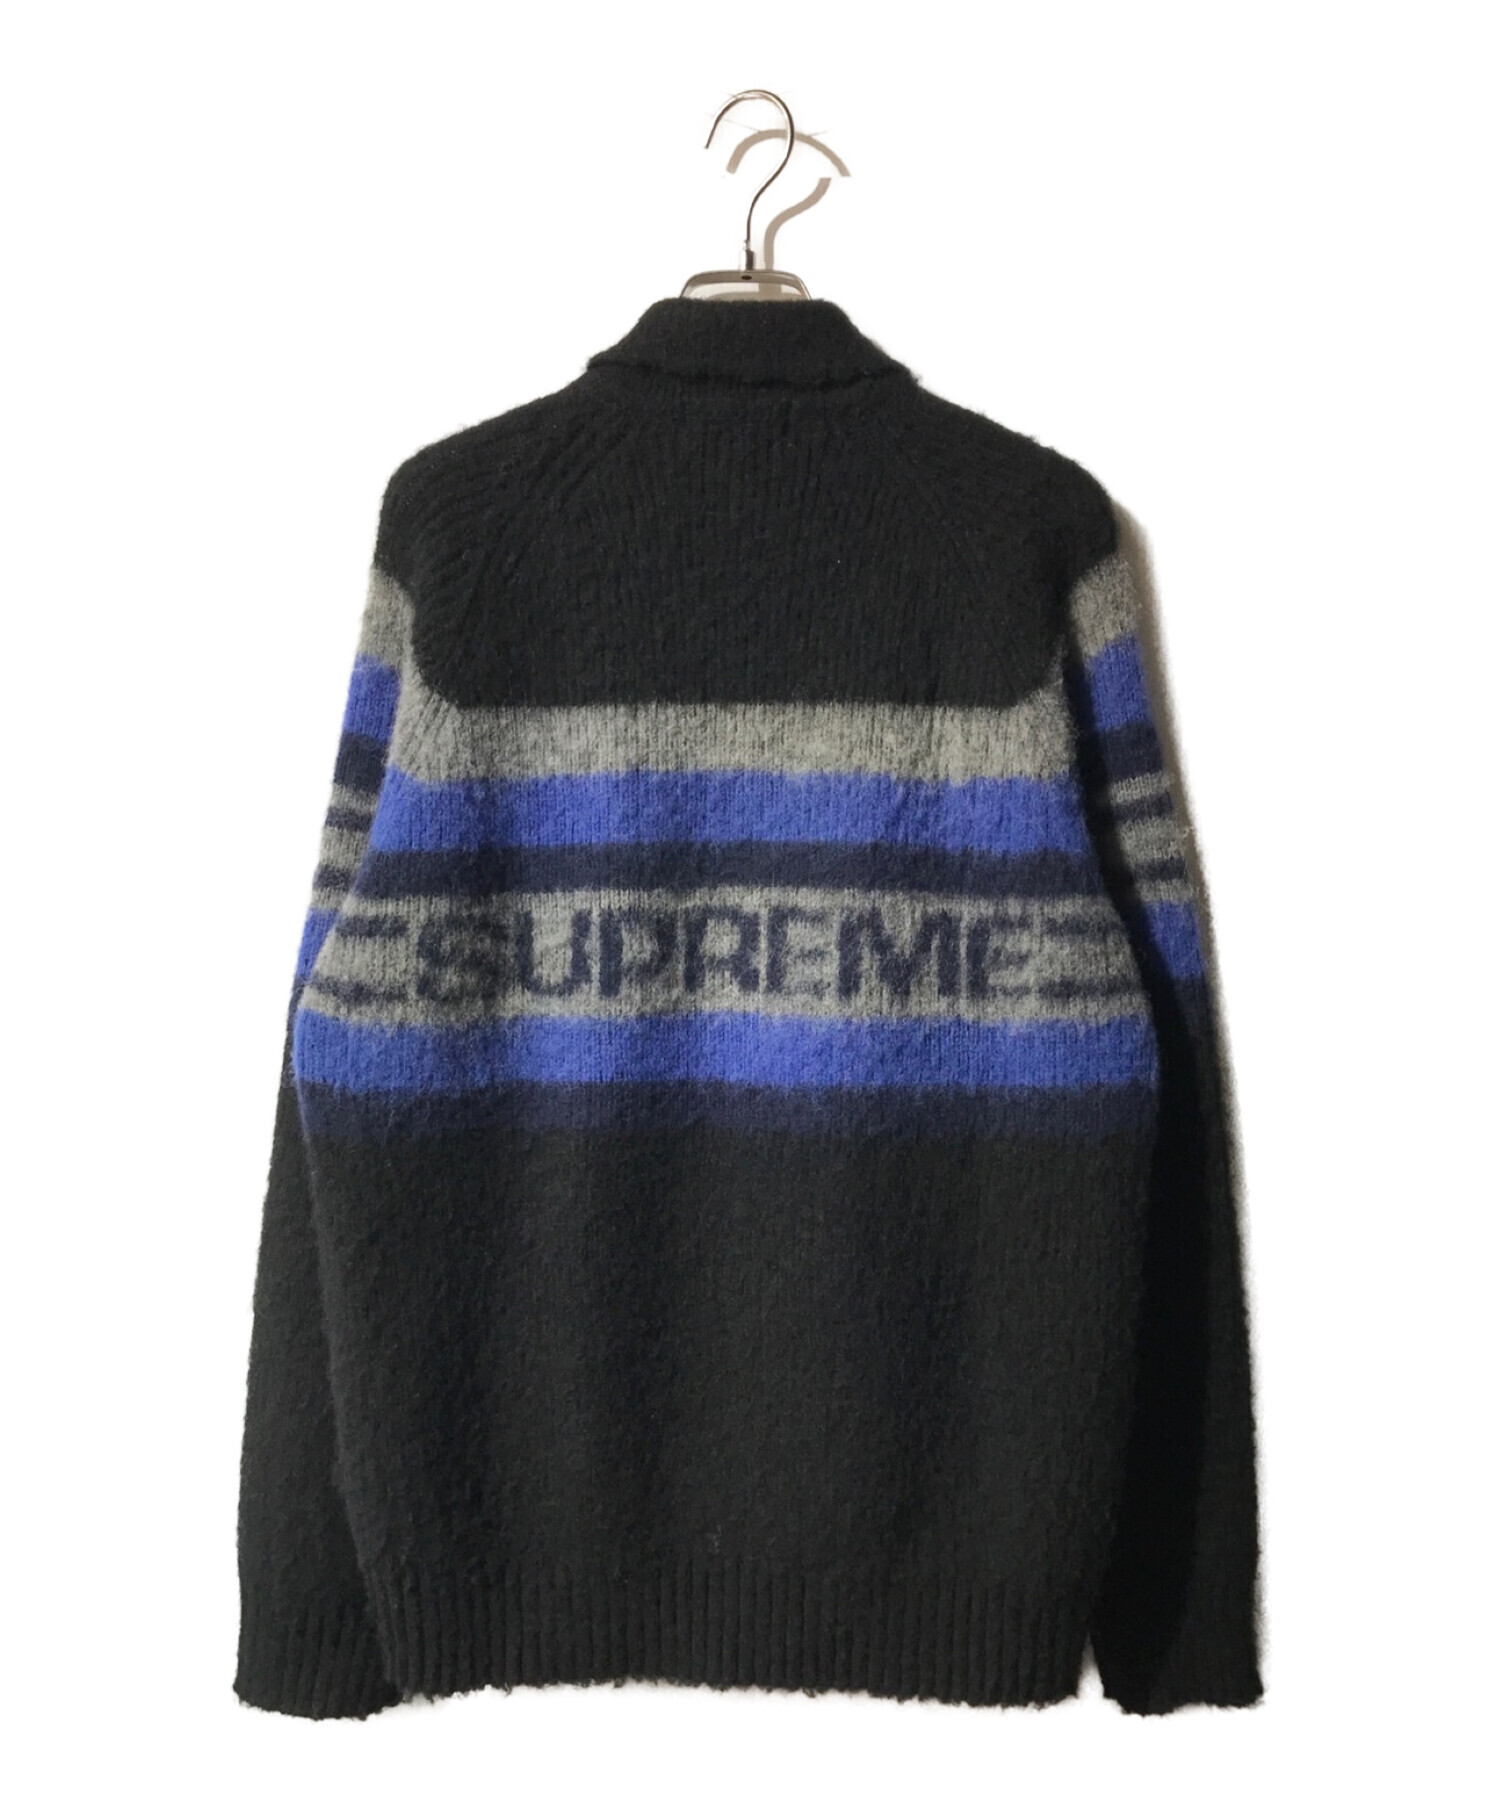 9,200円Supreme Brushed Wool Zip Up Sweater